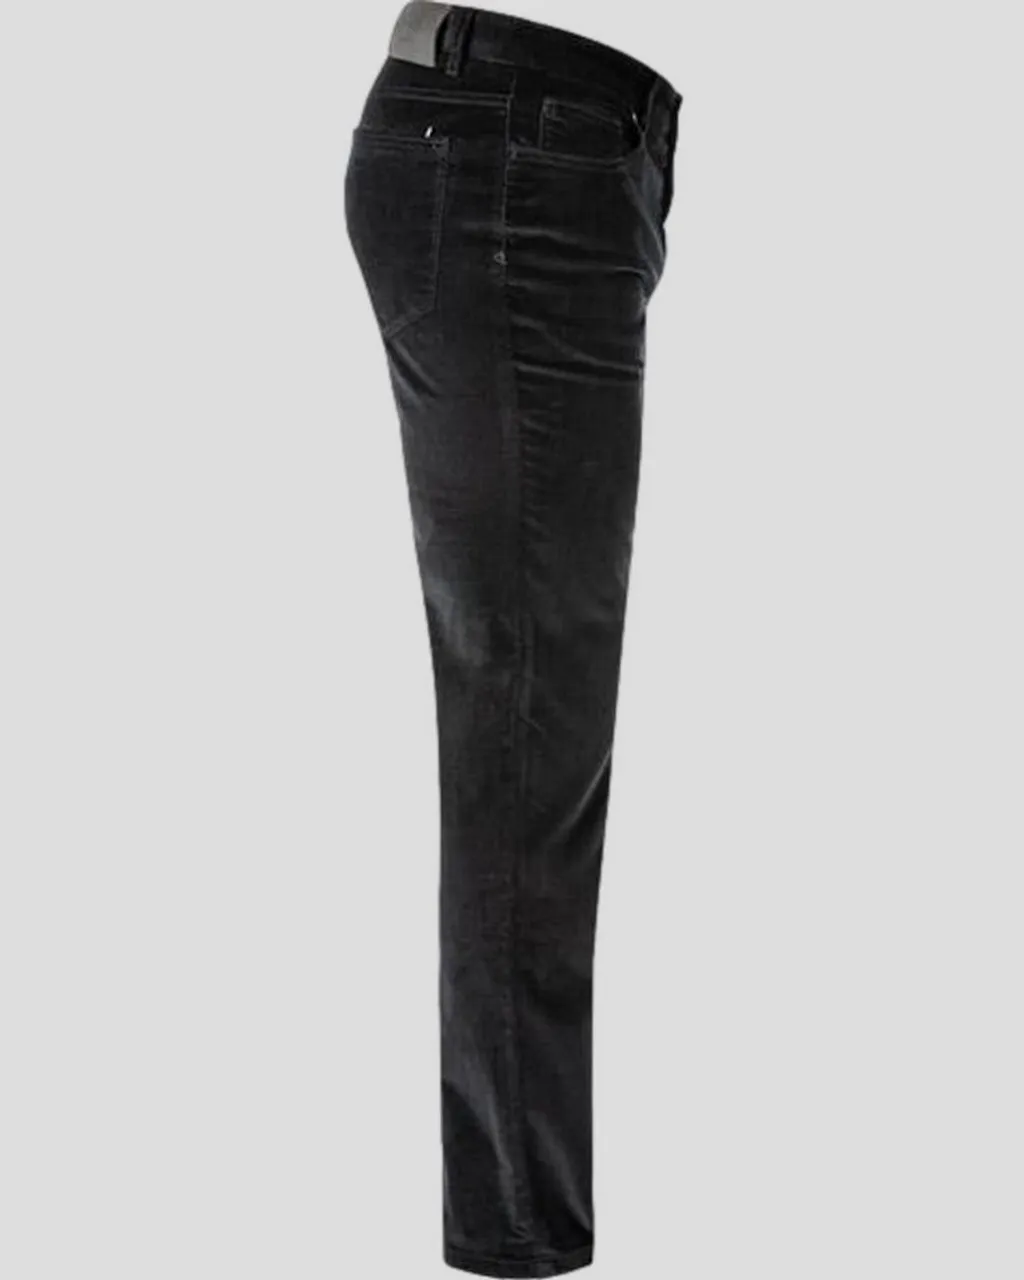 Hiltl 5-Pocket-Jeans